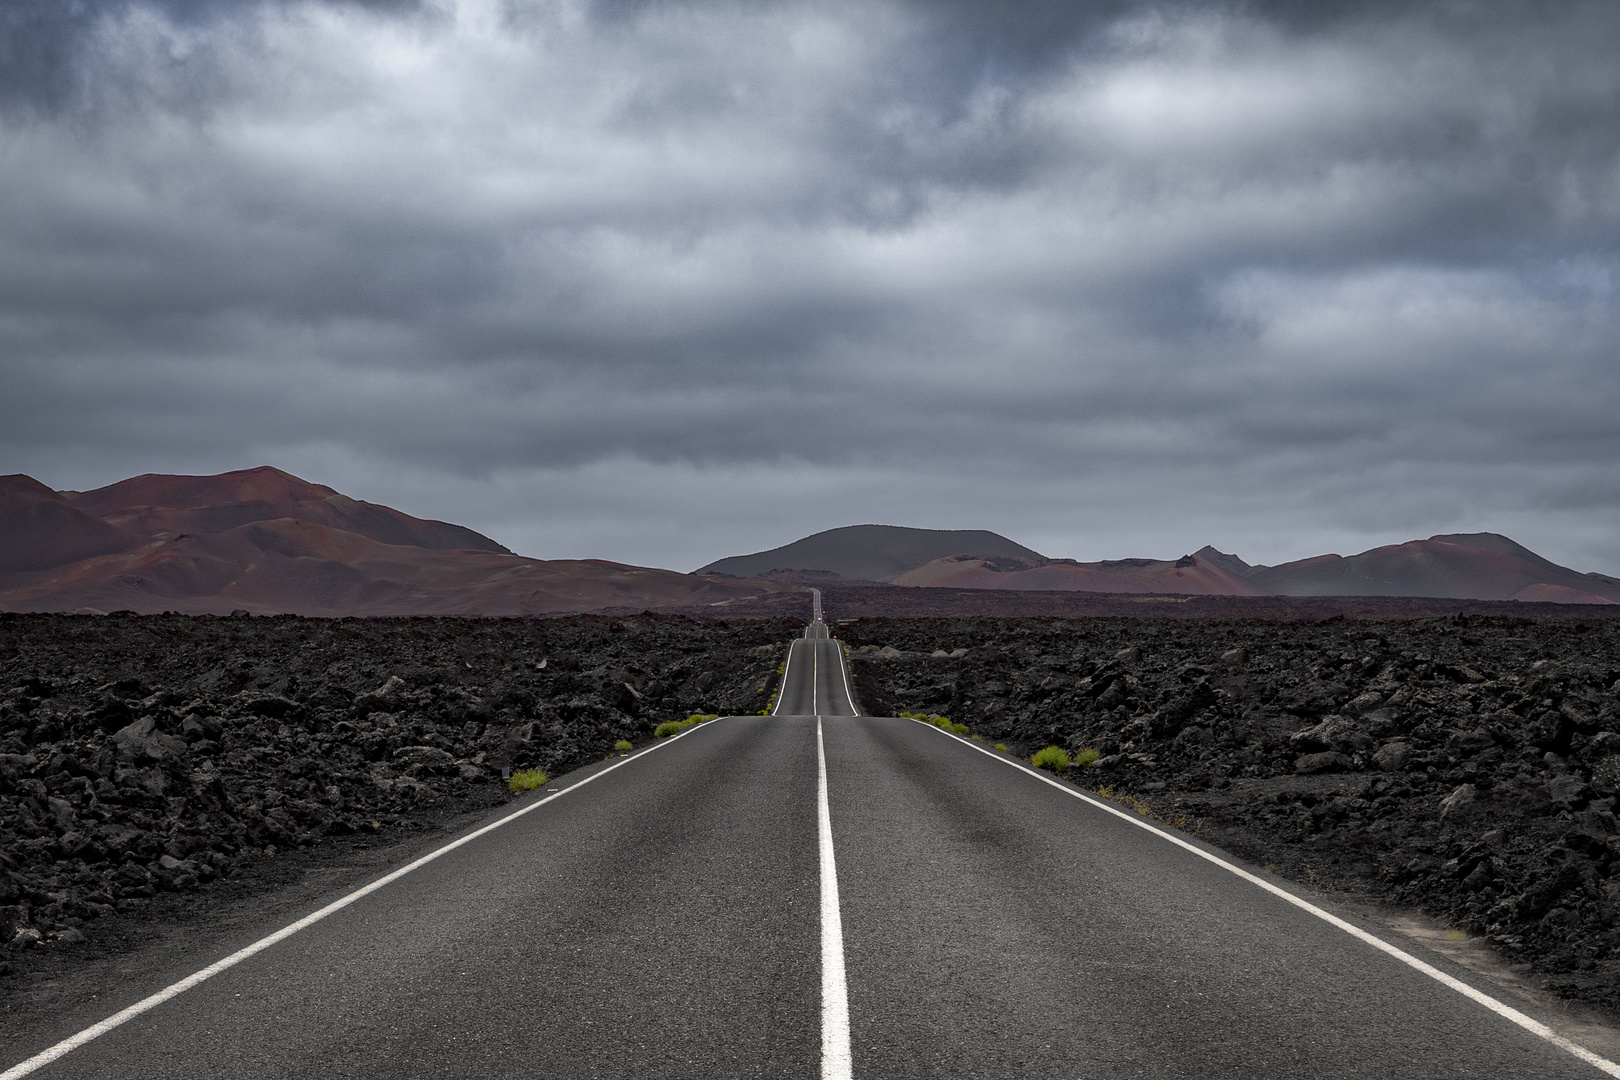 Lanzarote - Road through no man's land